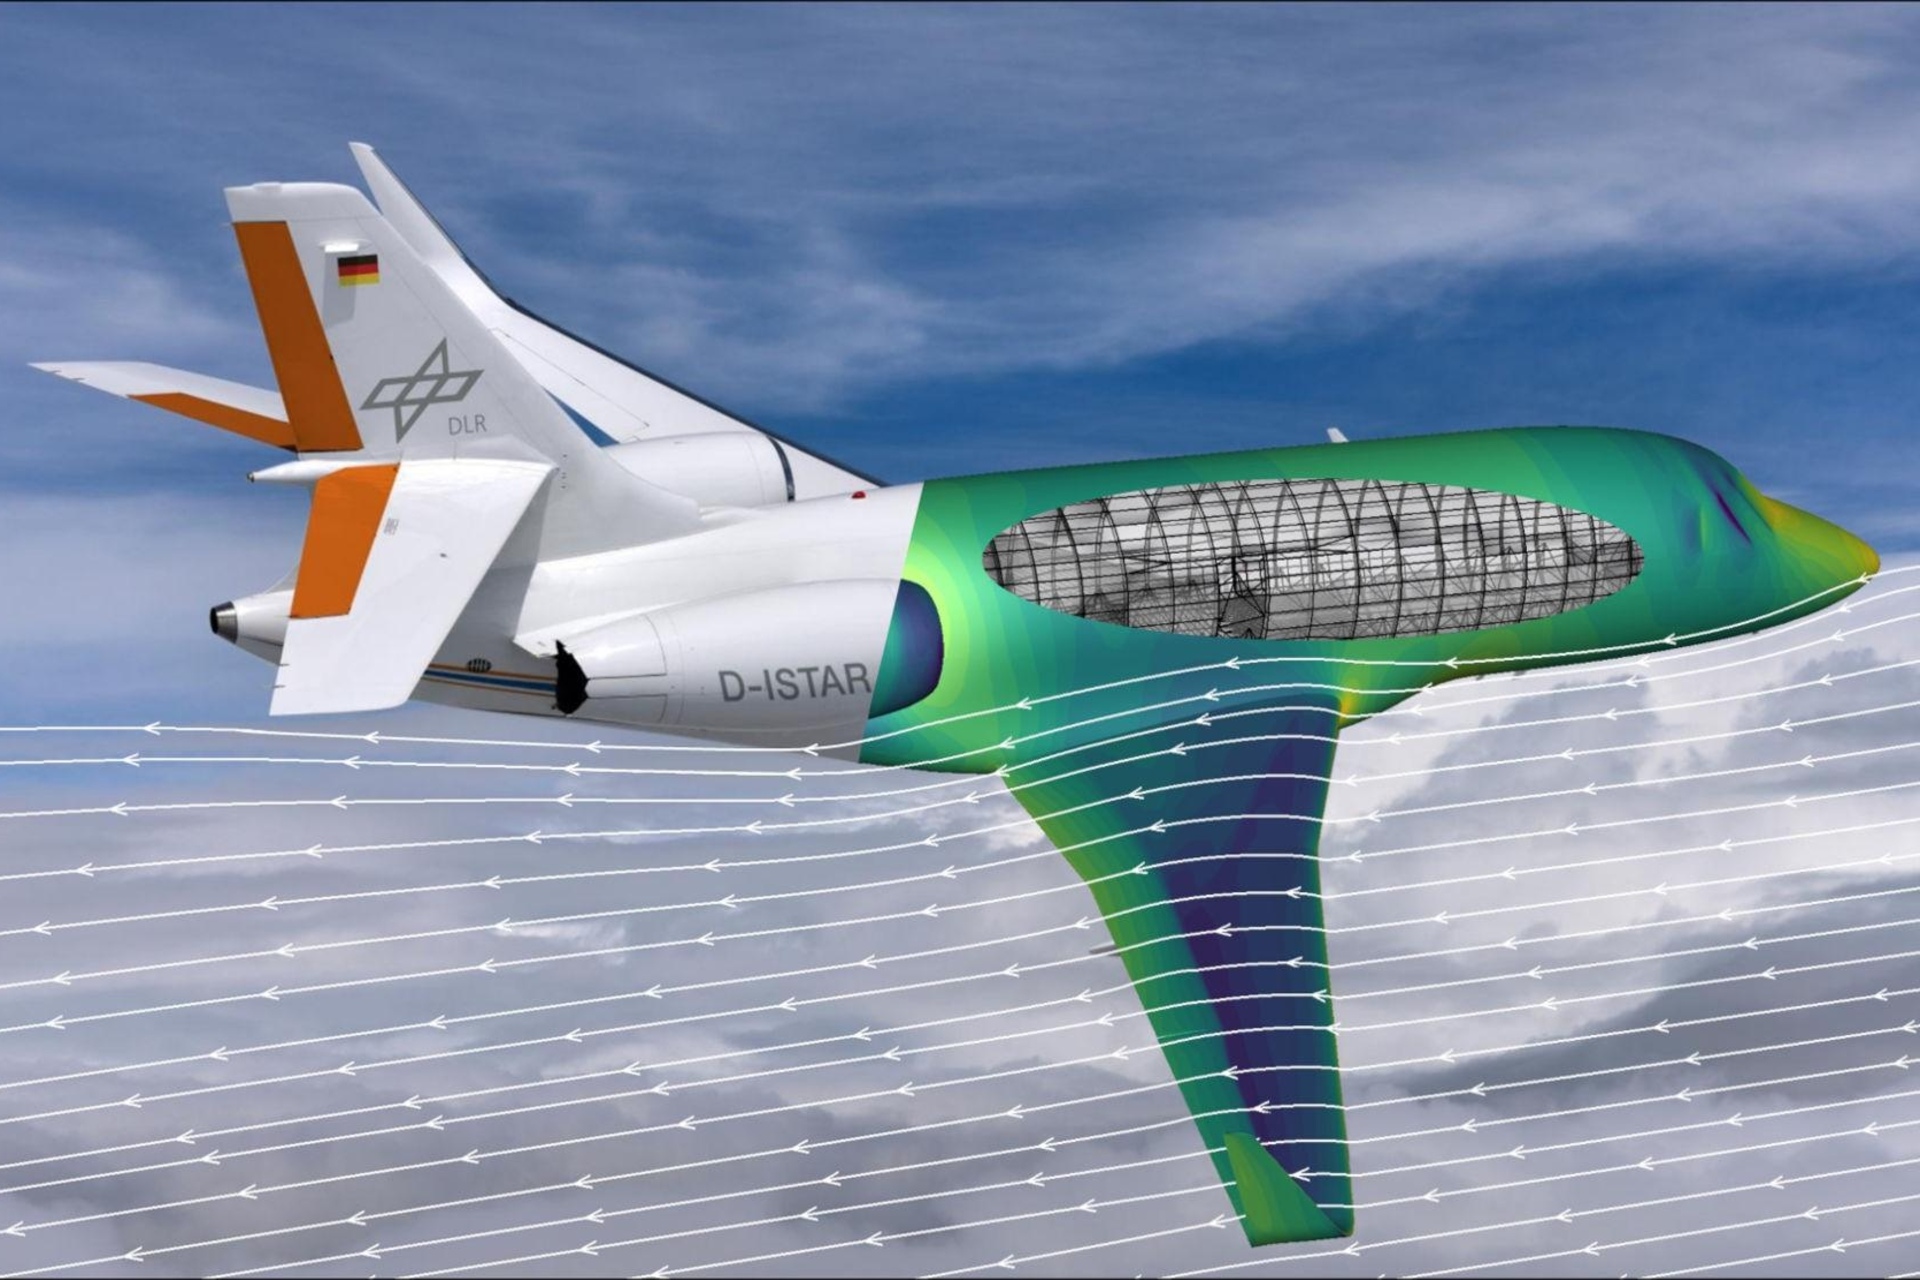 CFD: Počítačom podporovaná simulácia aerodynamického prúdenia, výpočtová dynamika tekutín alebo CFD je základom pre vývoj lietadiel novej generácie: výskumné lietadlo ISTAR z DLR je zobrazené s rezom vizualizovaným pomocou farebného gradientu uskutočnenej simulácie prúdenia. s novým softvérom vyvinutým spoločnosťami Airbus, DLR a ONERA